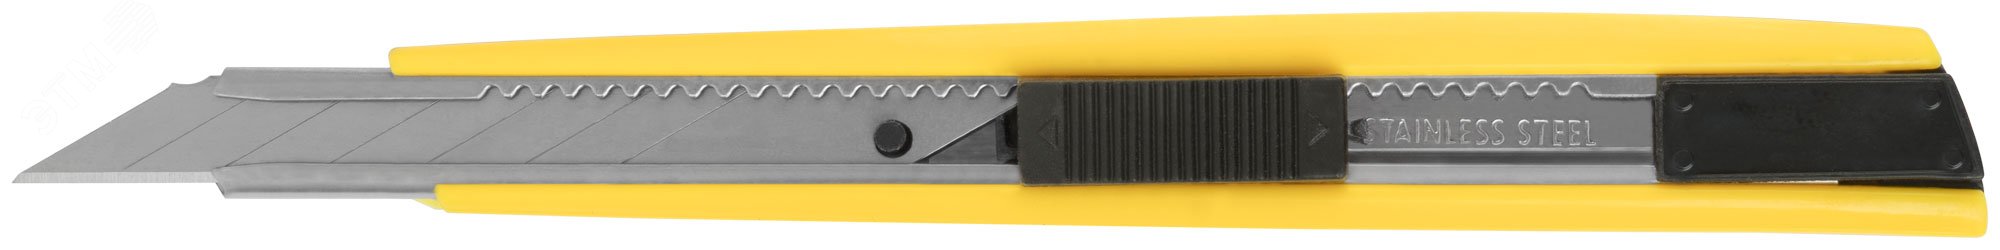 Нож технический 9 мм, усиленный, пластиковый корпус 10210 FIT - превью